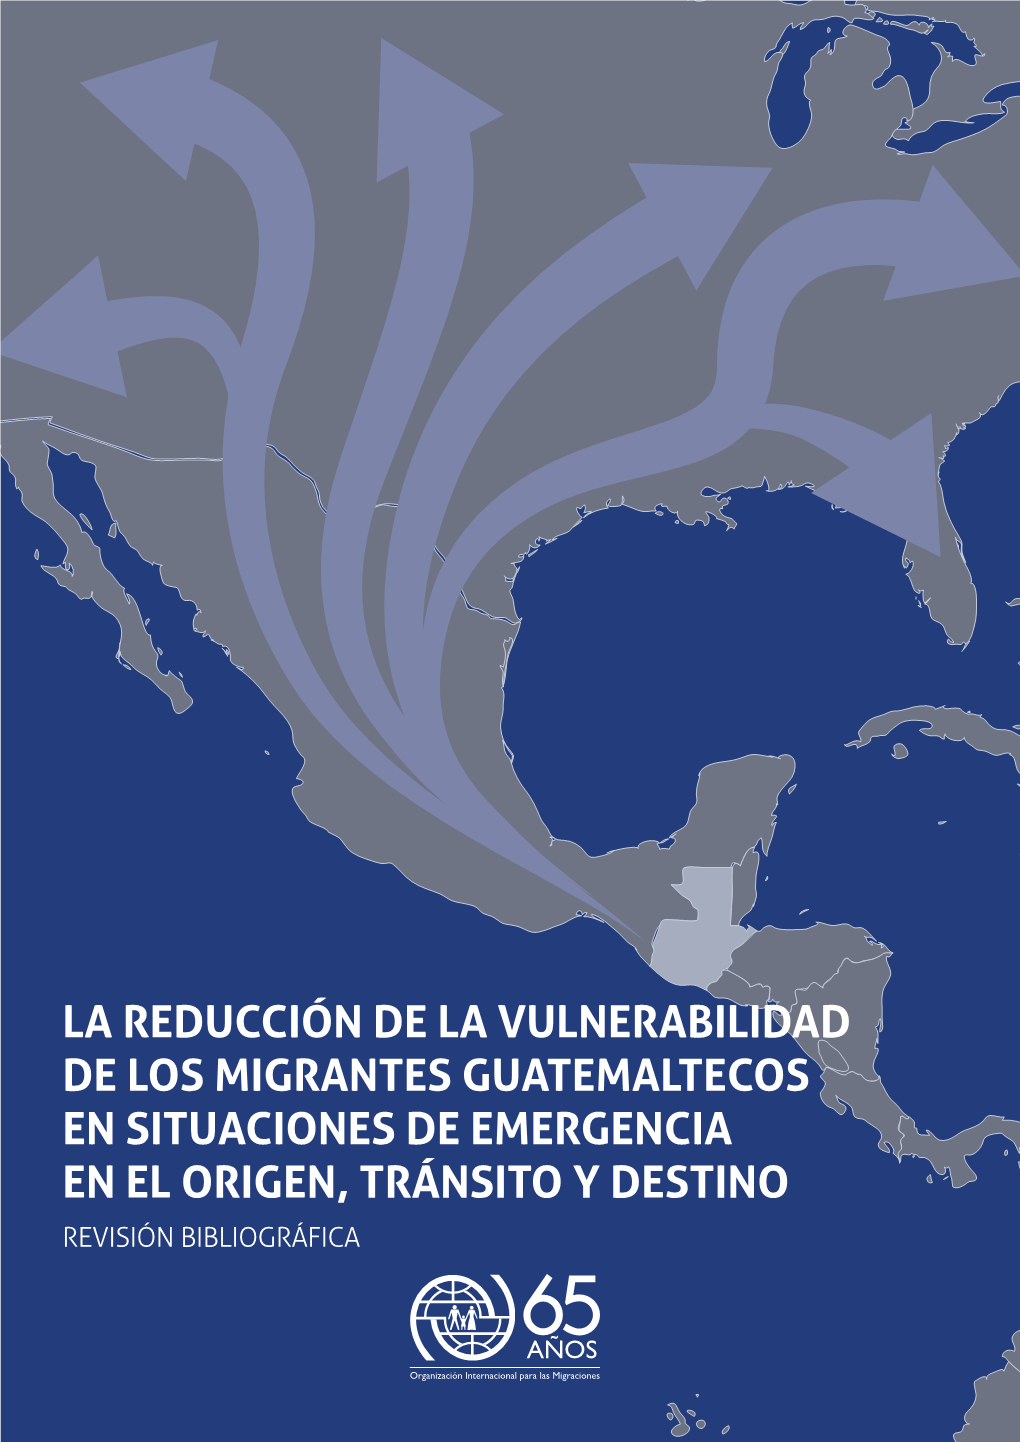 La Reducción De La Vulnerabilidad De Los Migrantes Guatemaltecos En Situaciones De Emergencia En El Origen, Tránsito Y Destino Revisión Bibliográfica